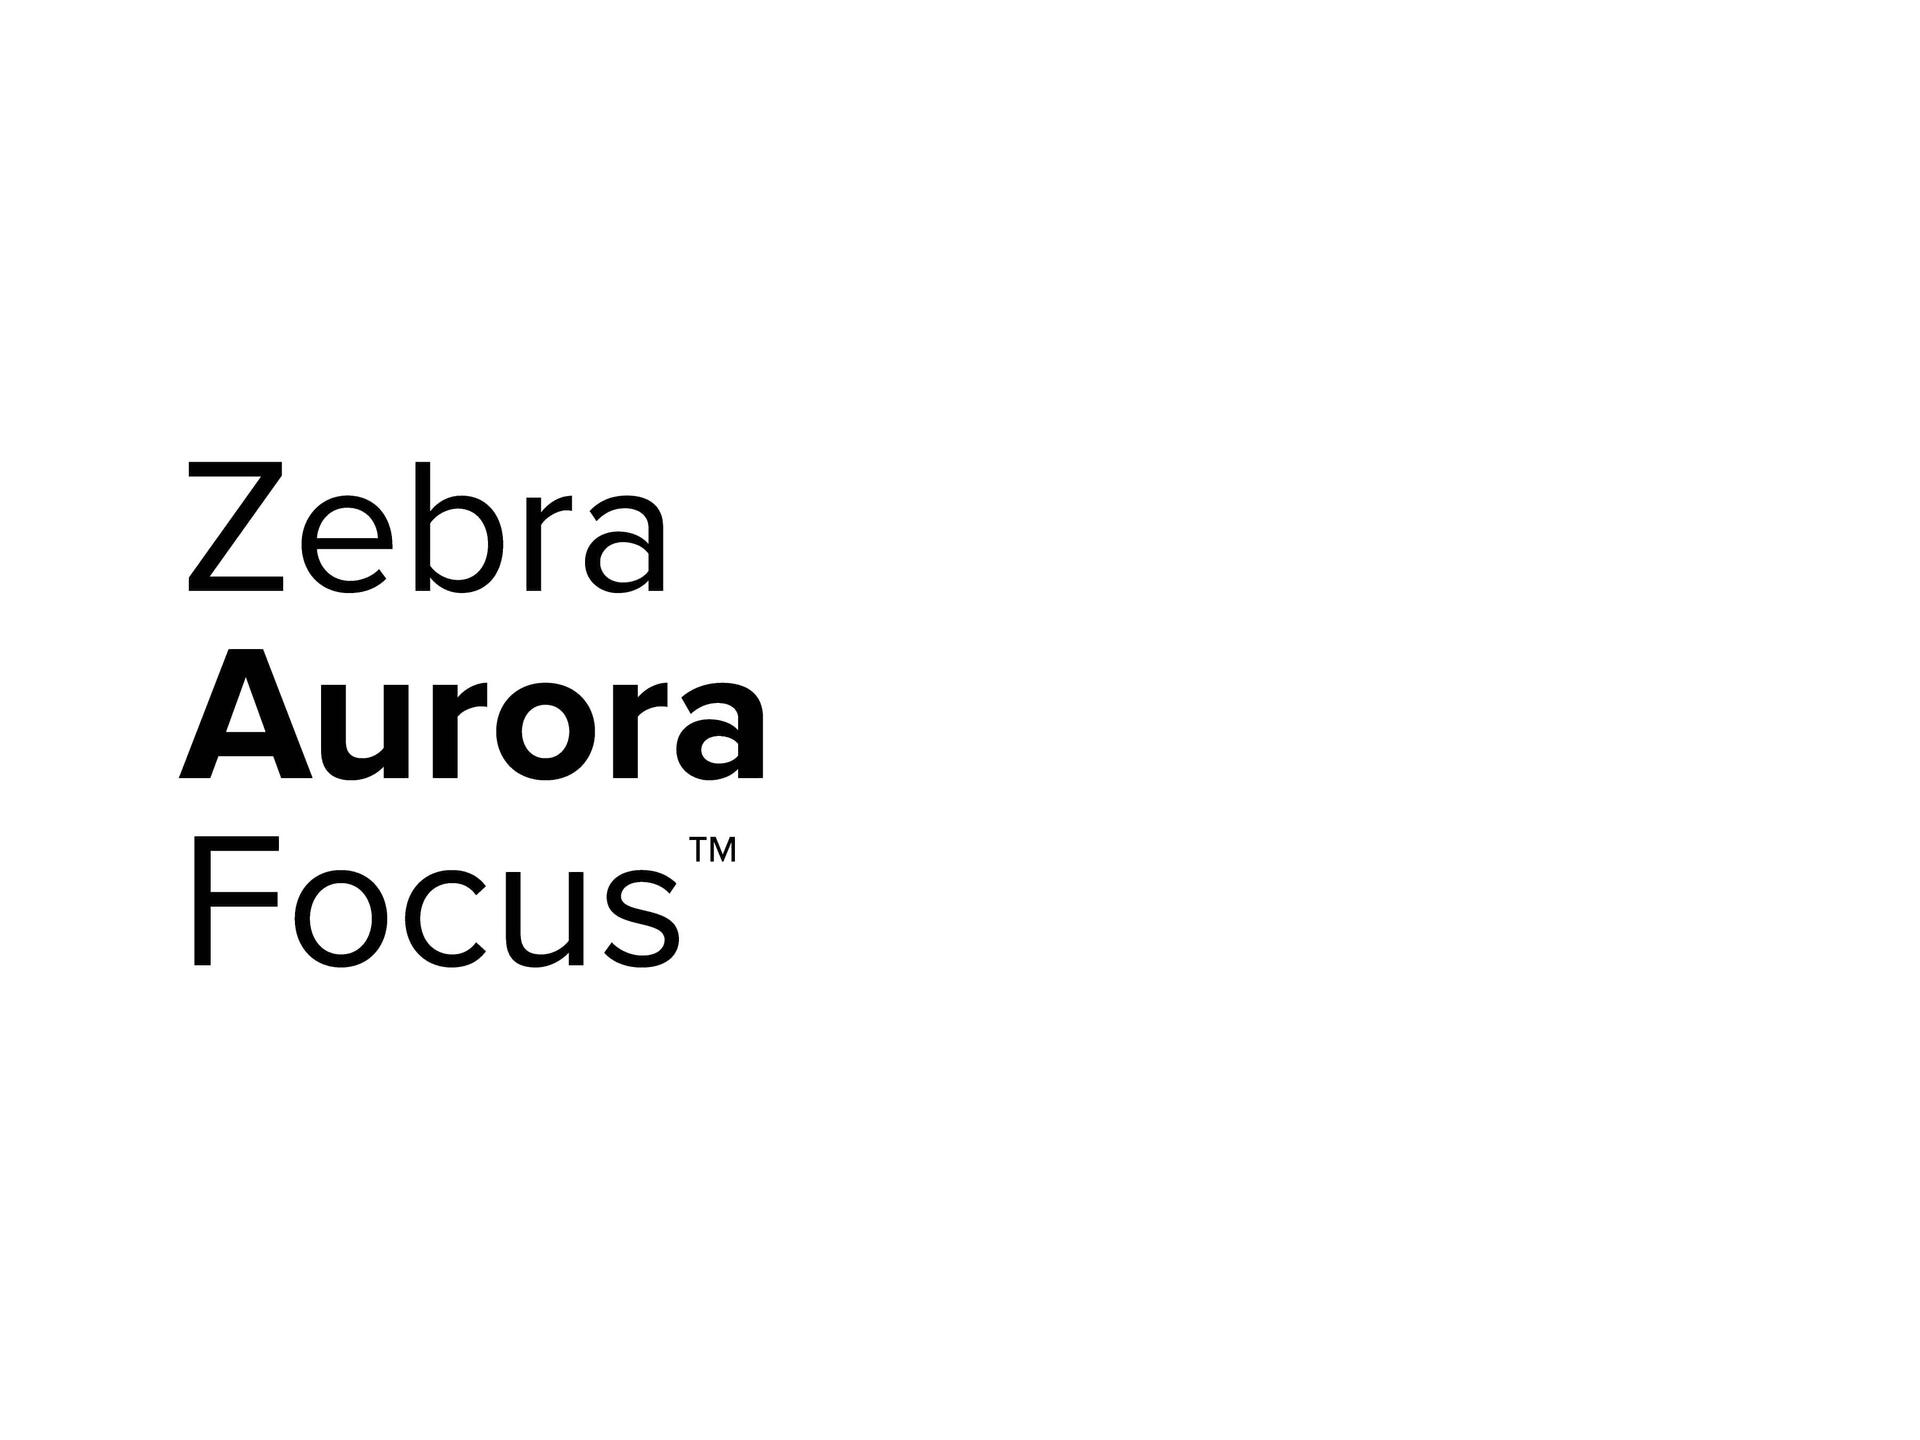 Zebra Aurora Focus